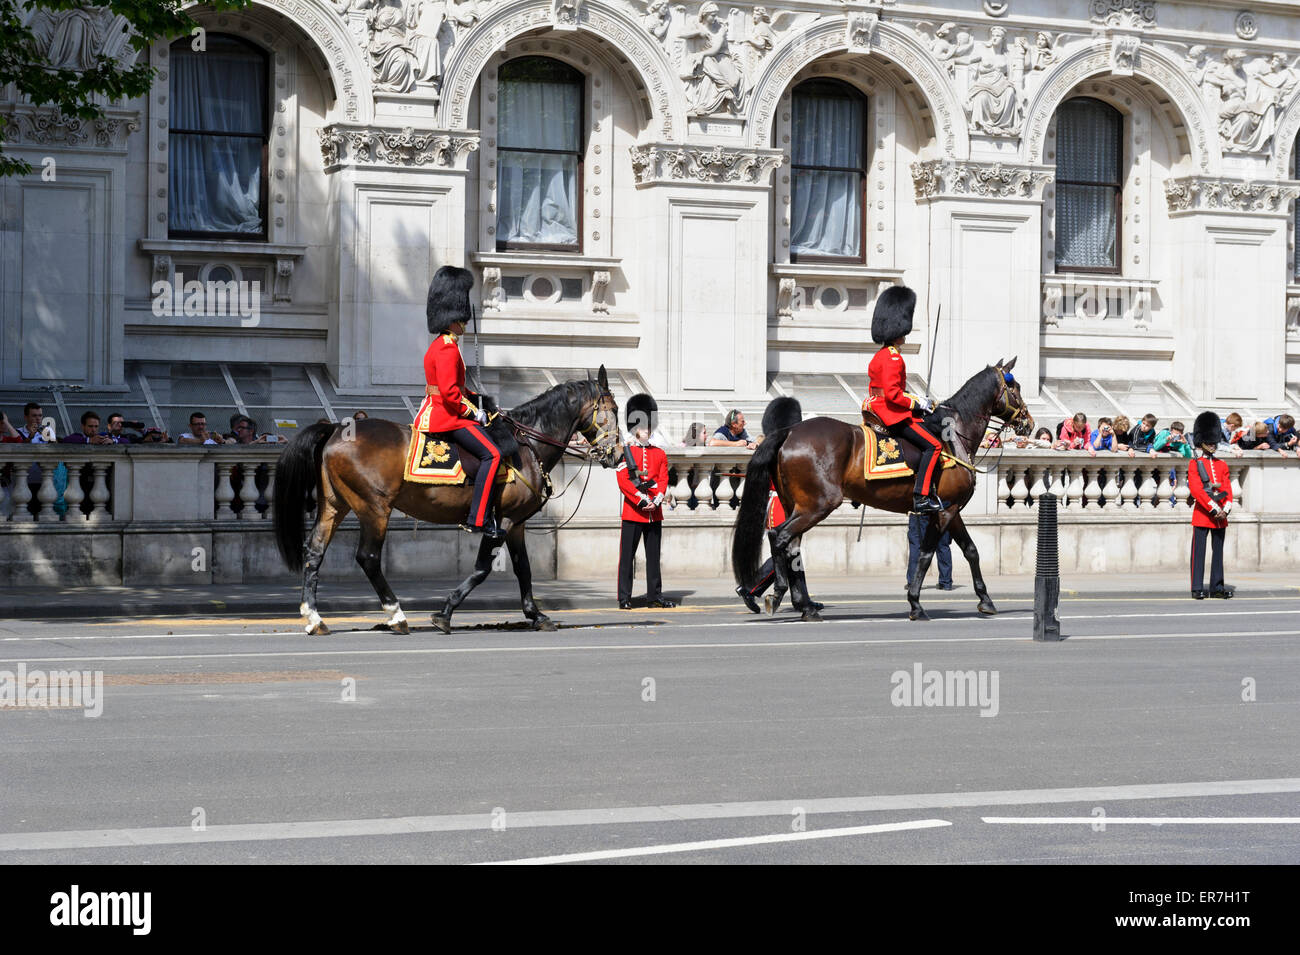 Les gardes de la reine à cheval pendant l'ouverture du Parlement menant la procession, Londres, Angleterre. Banque D'Images